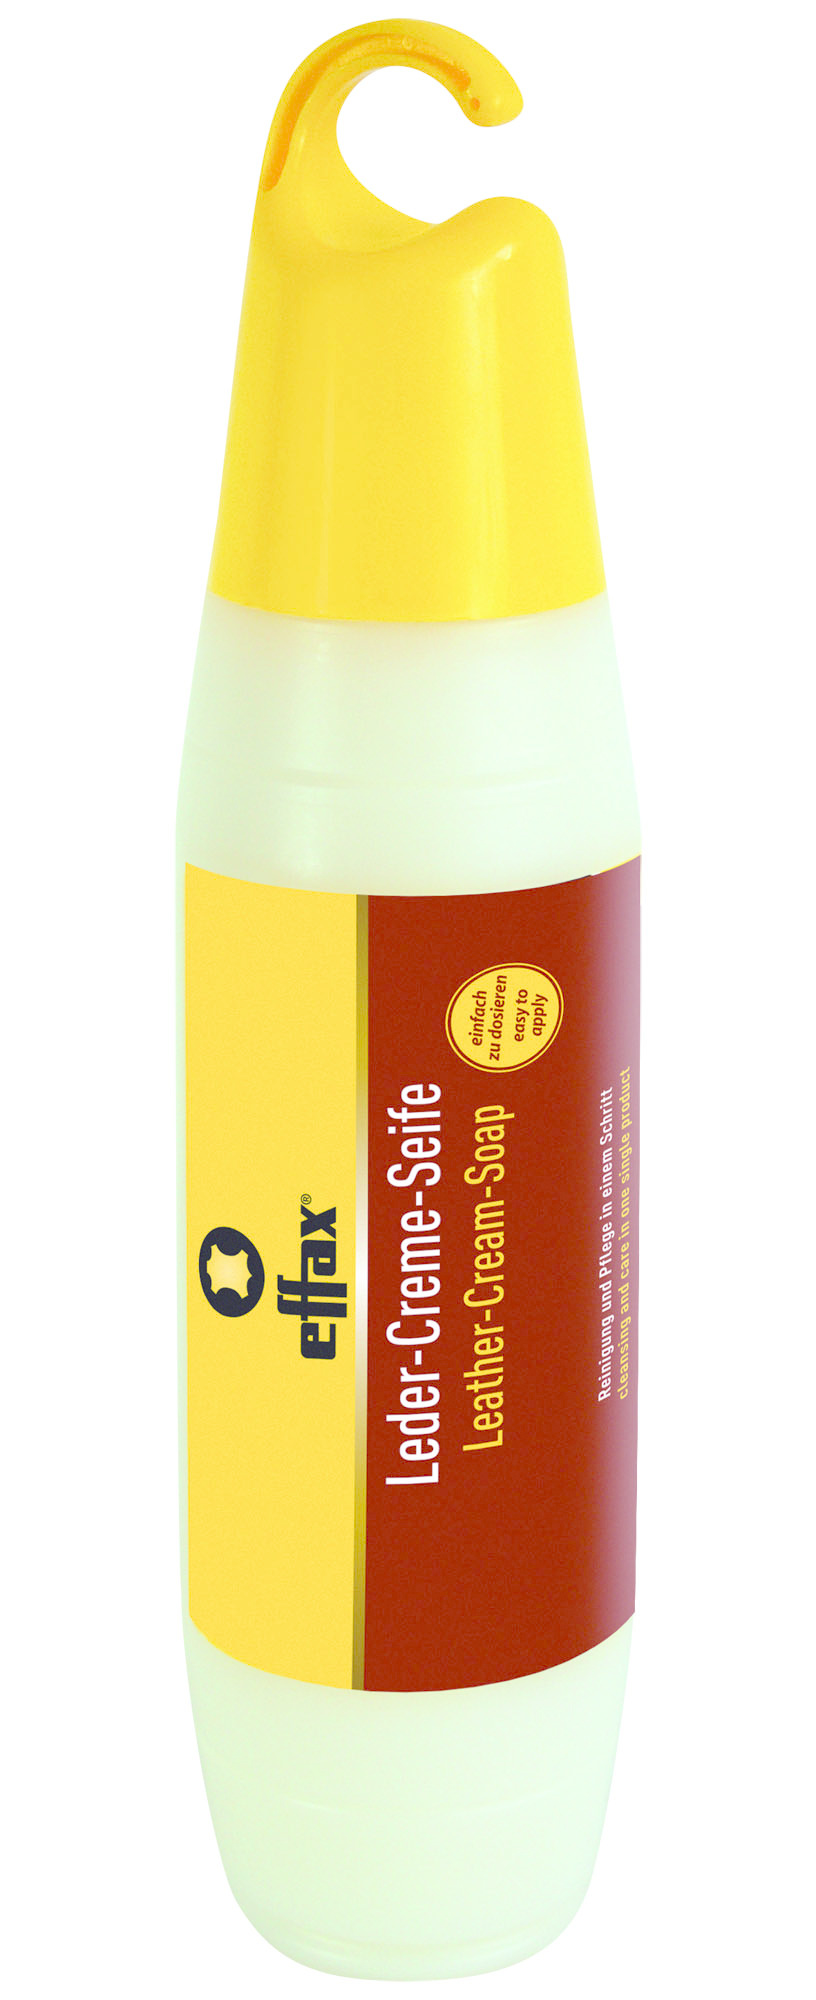 EFFAX EFFAX Leather-cream soap Flicflac 400ML